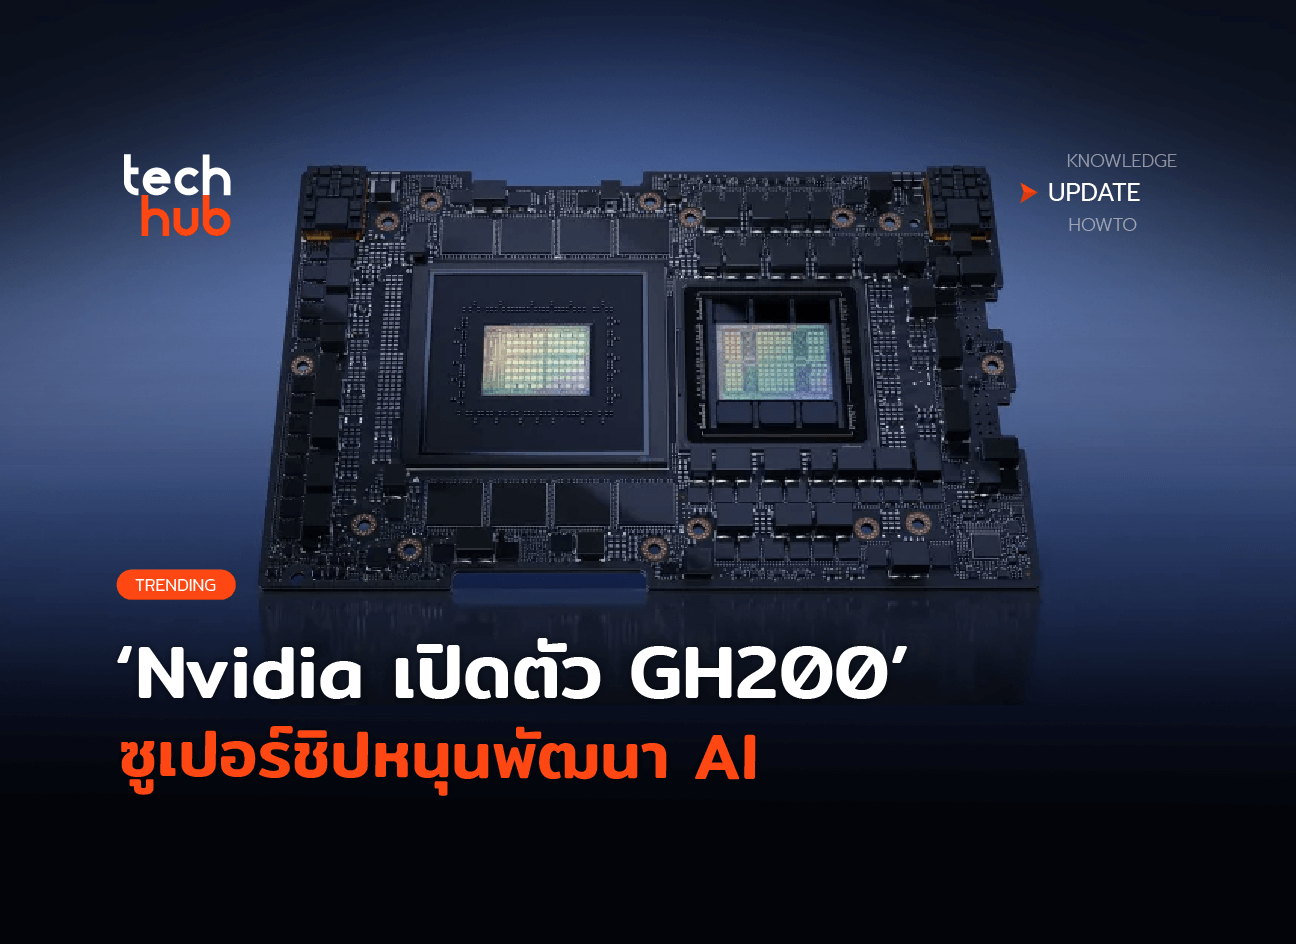 Nvidia が、AI 開発をサポートする GH200 スーパーチップをすぐにリリース